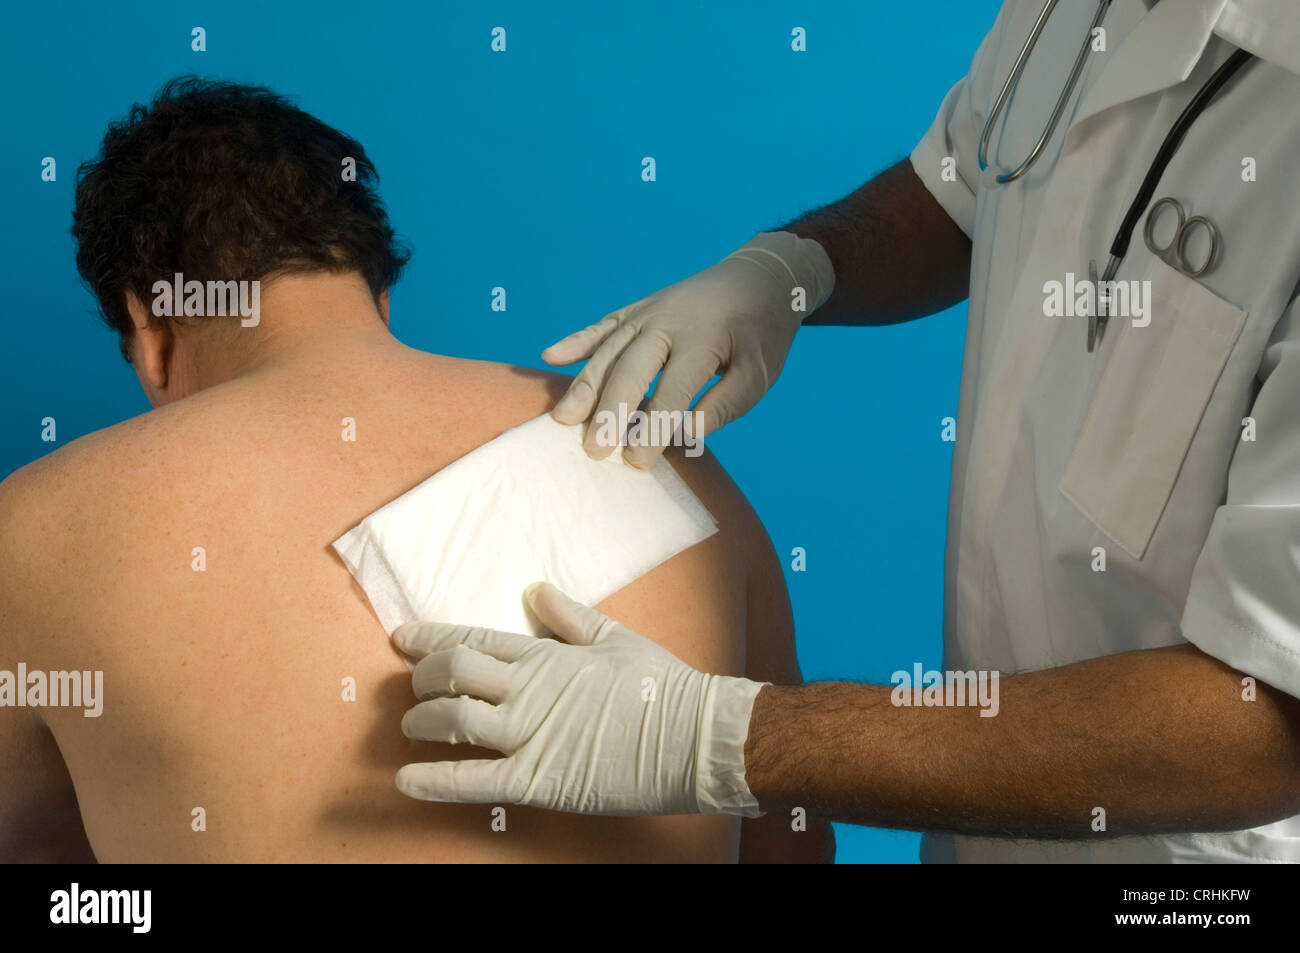 A nurse dresses a patient's back wound. Stock Photo